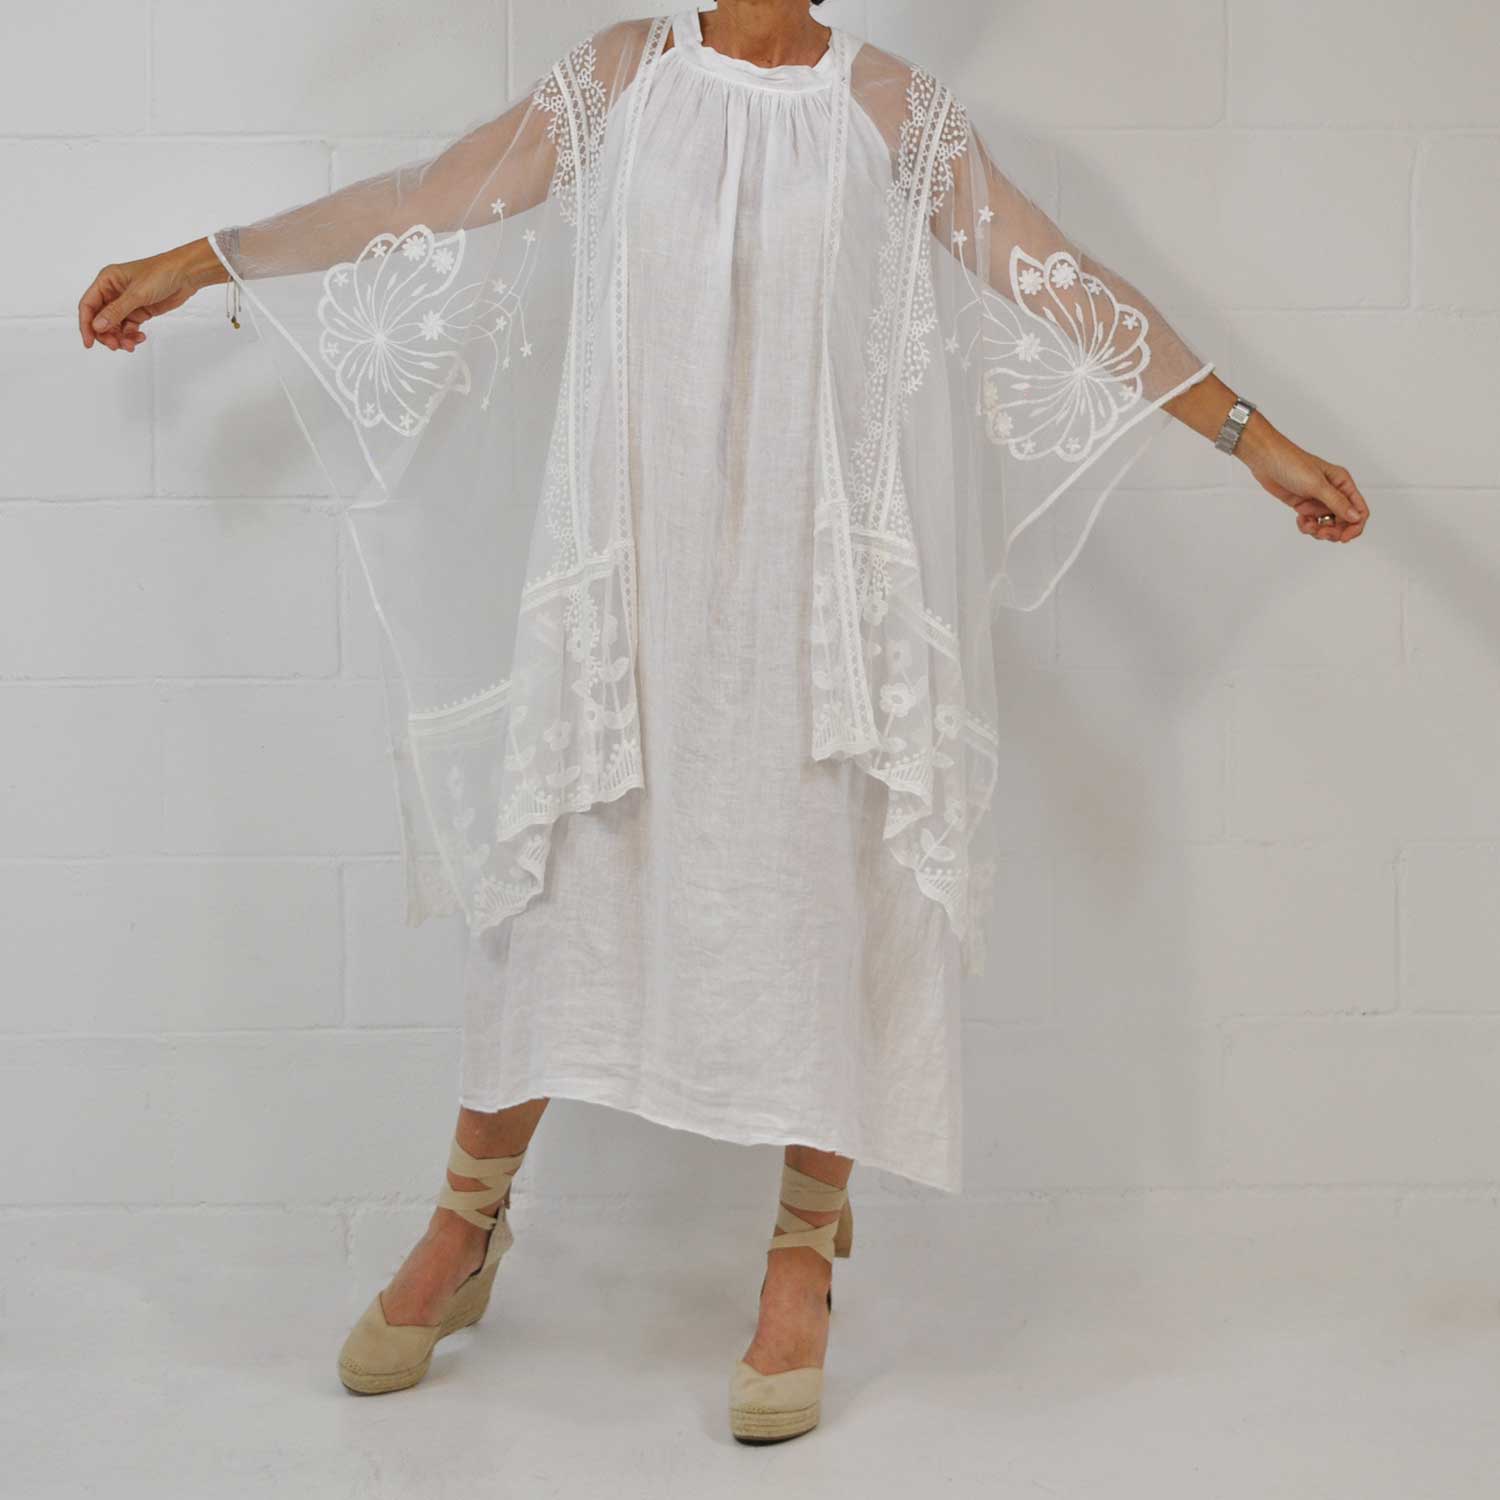 White lace shawl